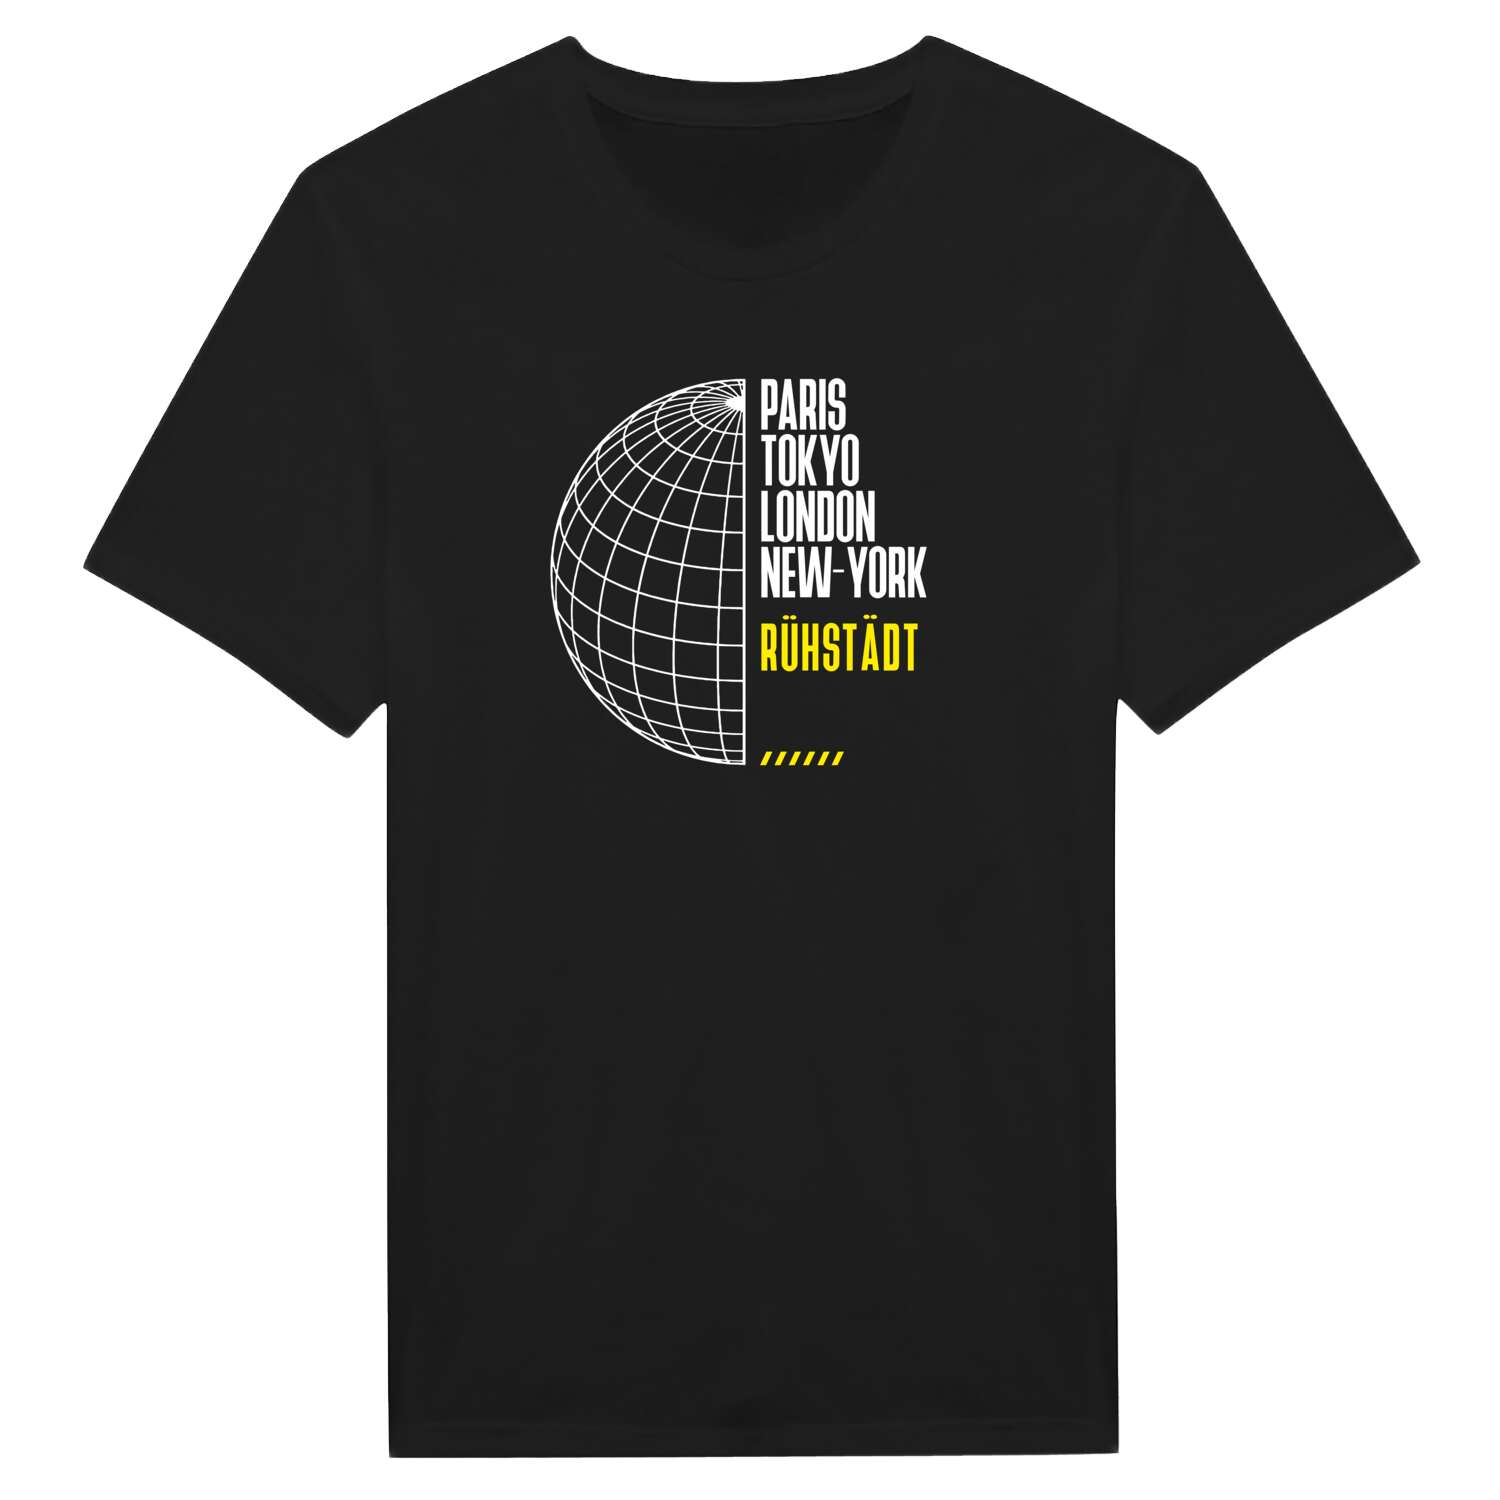 Rühstädt T-Shirt »Paris Tokyo London«